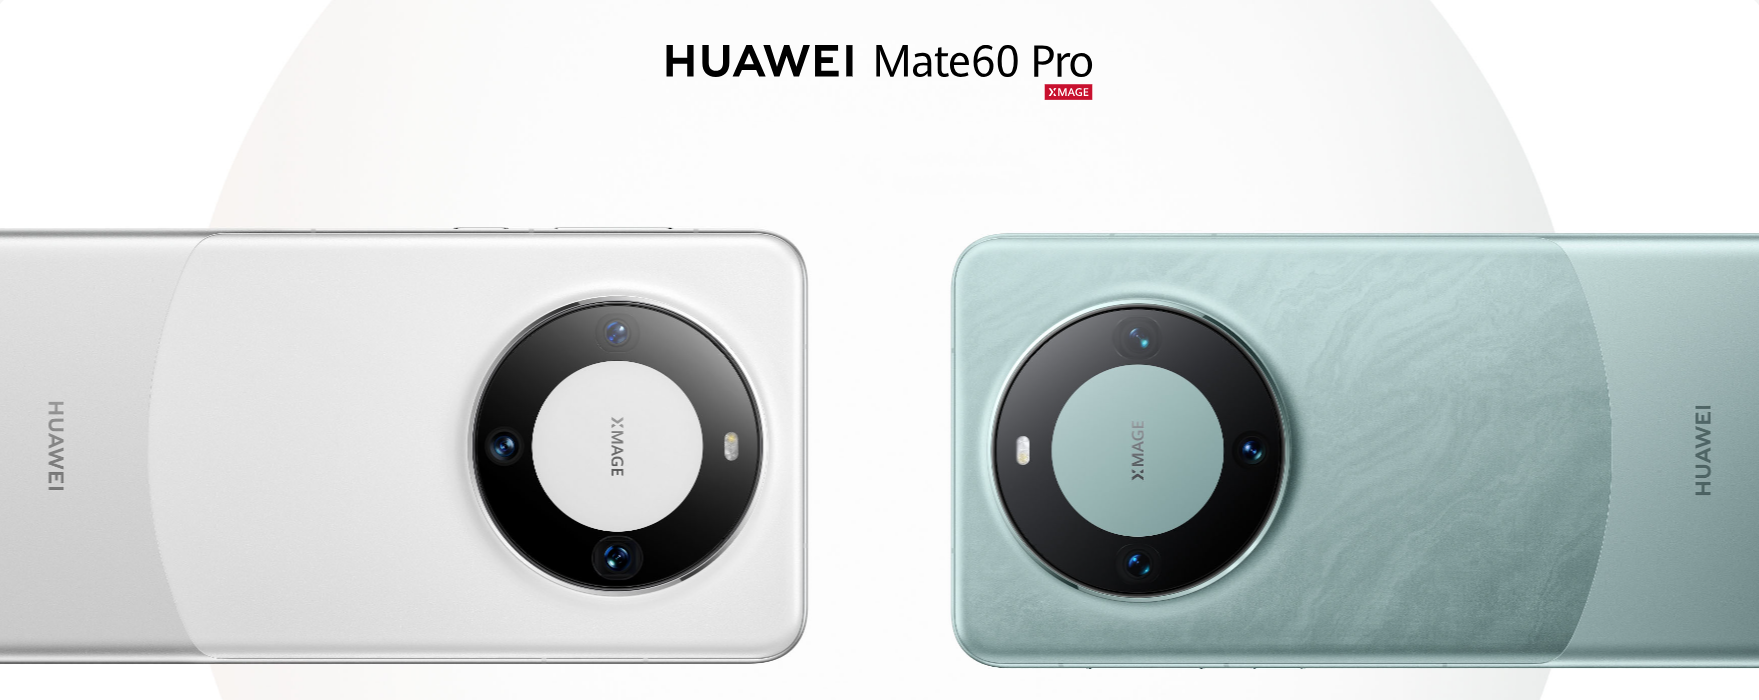 Huawei Mate 60 Pro. Photo: Huawei